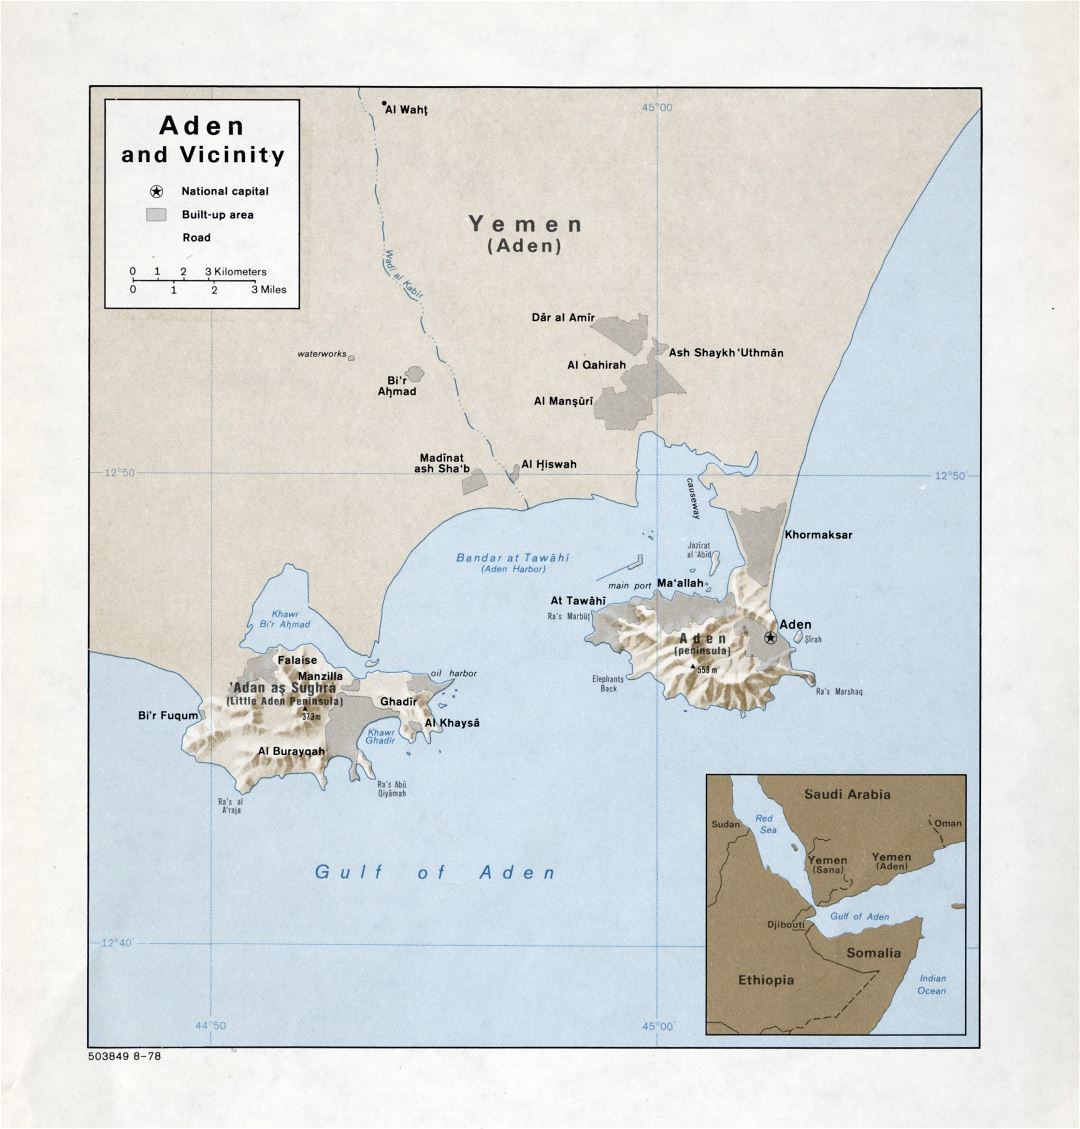 Grande detallado mapa de Adén y alrededores con relieve - 1978